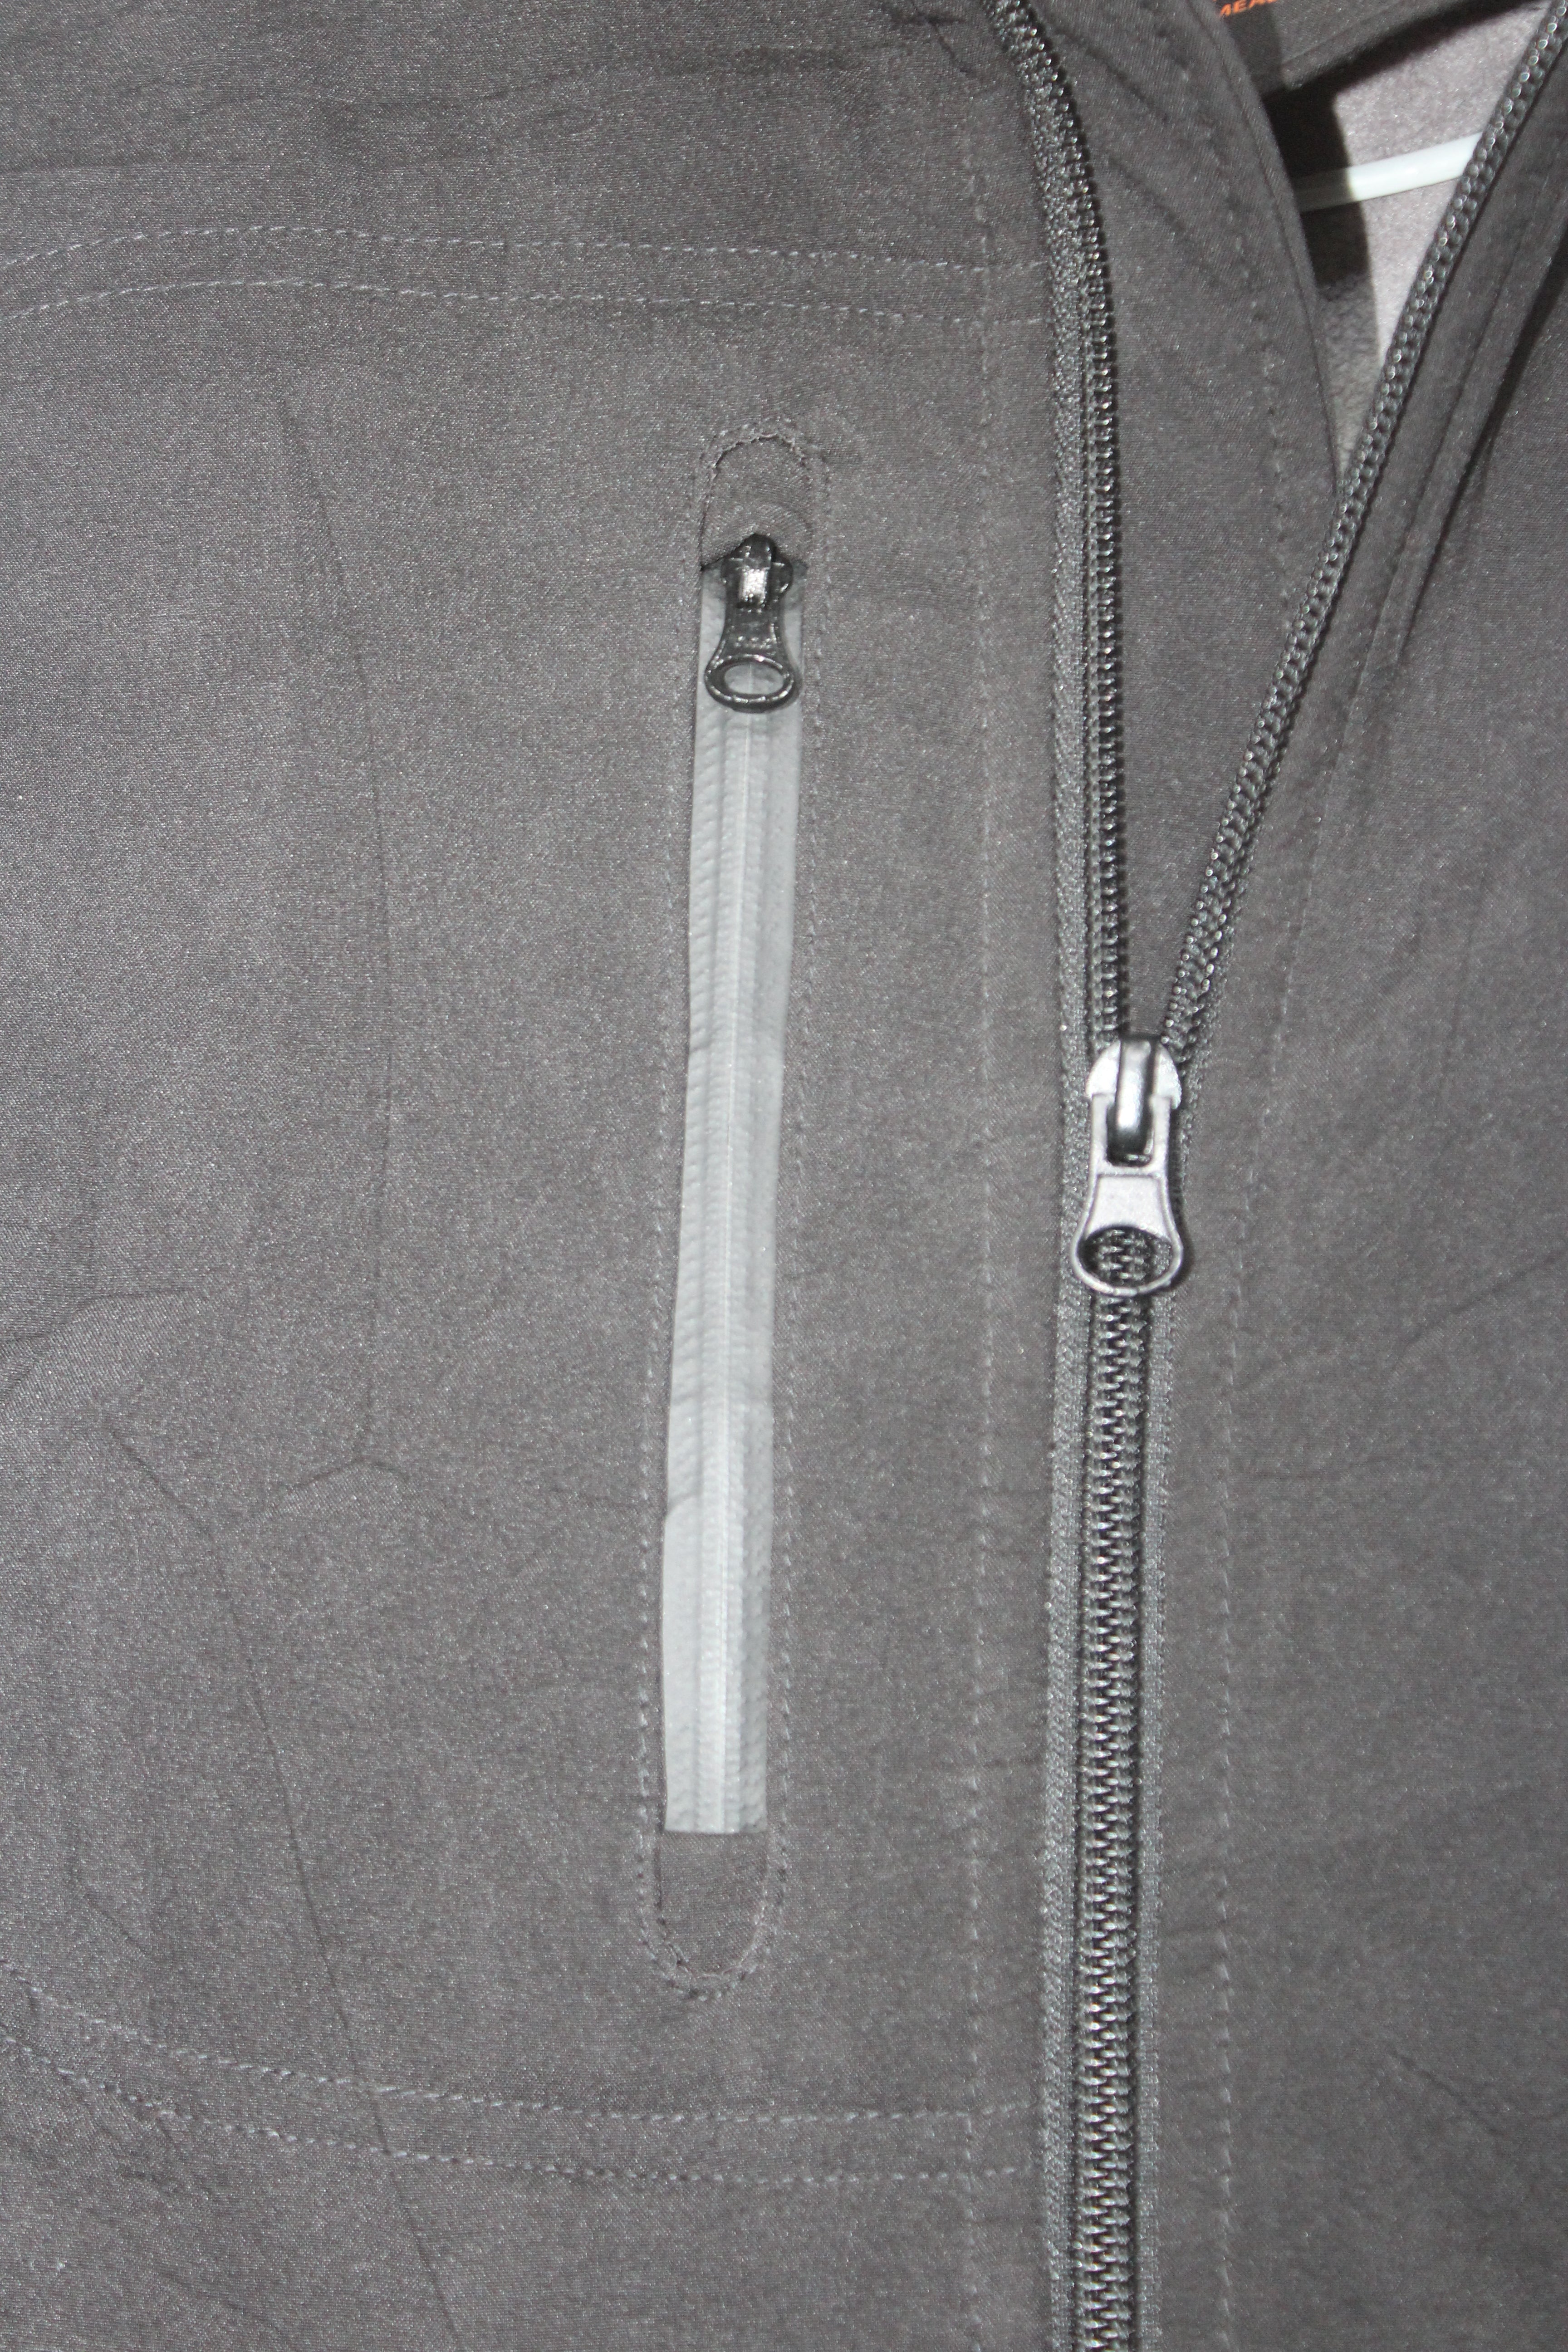 CX2 Branded Original Polyester Collar For Men Jacket